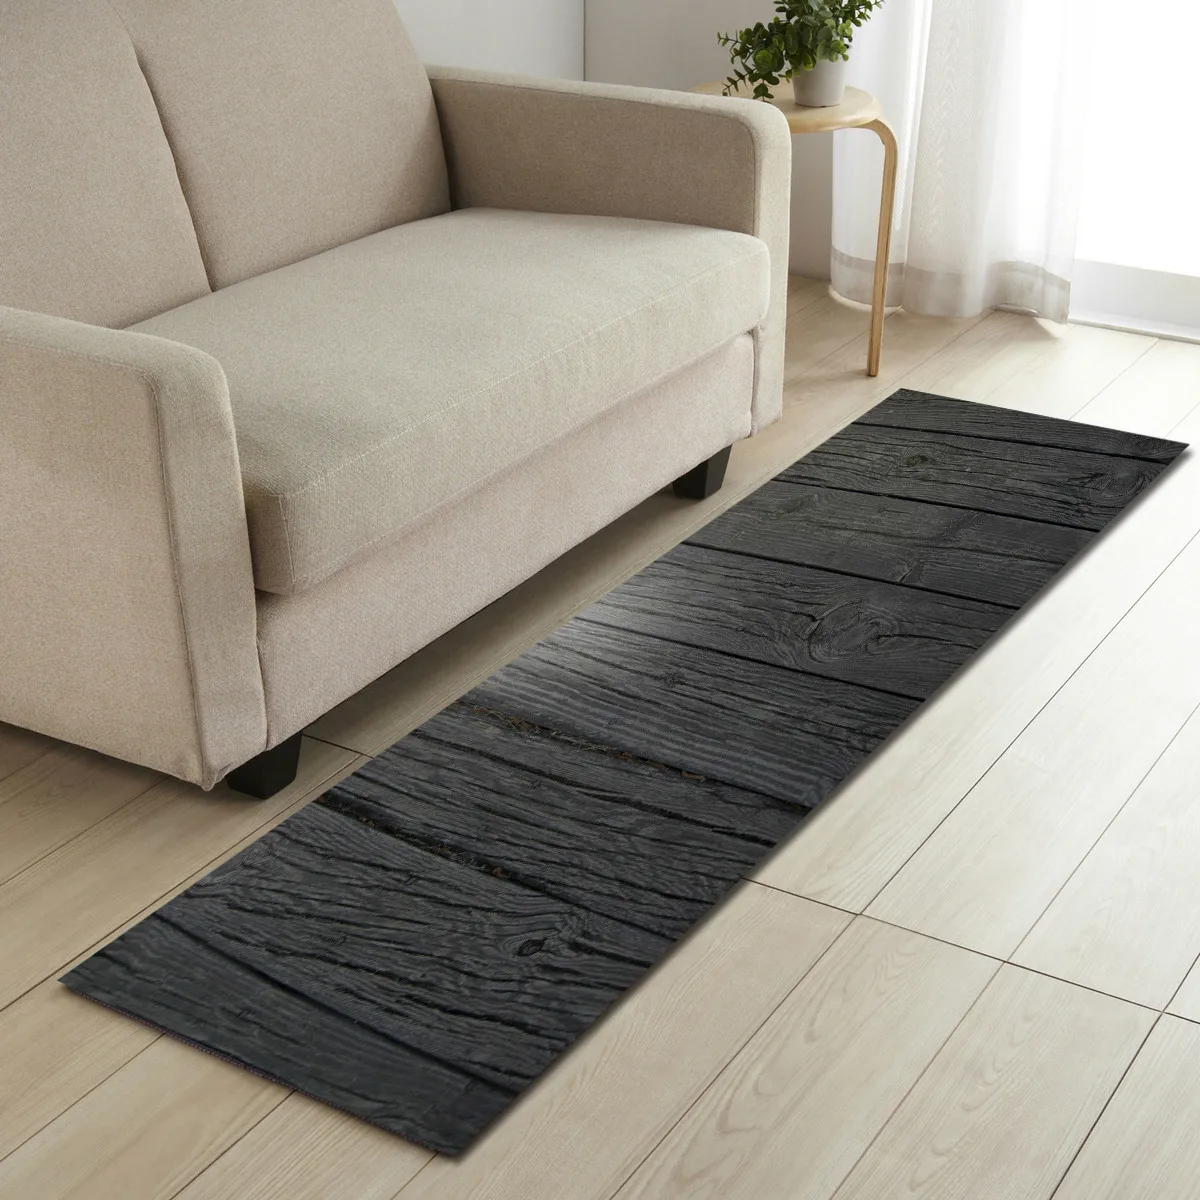 Zeegle деревянный узор ковер прямоугольный ковер для гостиной Коврик Противоскользящий коврик для спальни кухонный ковер диван стол коврики